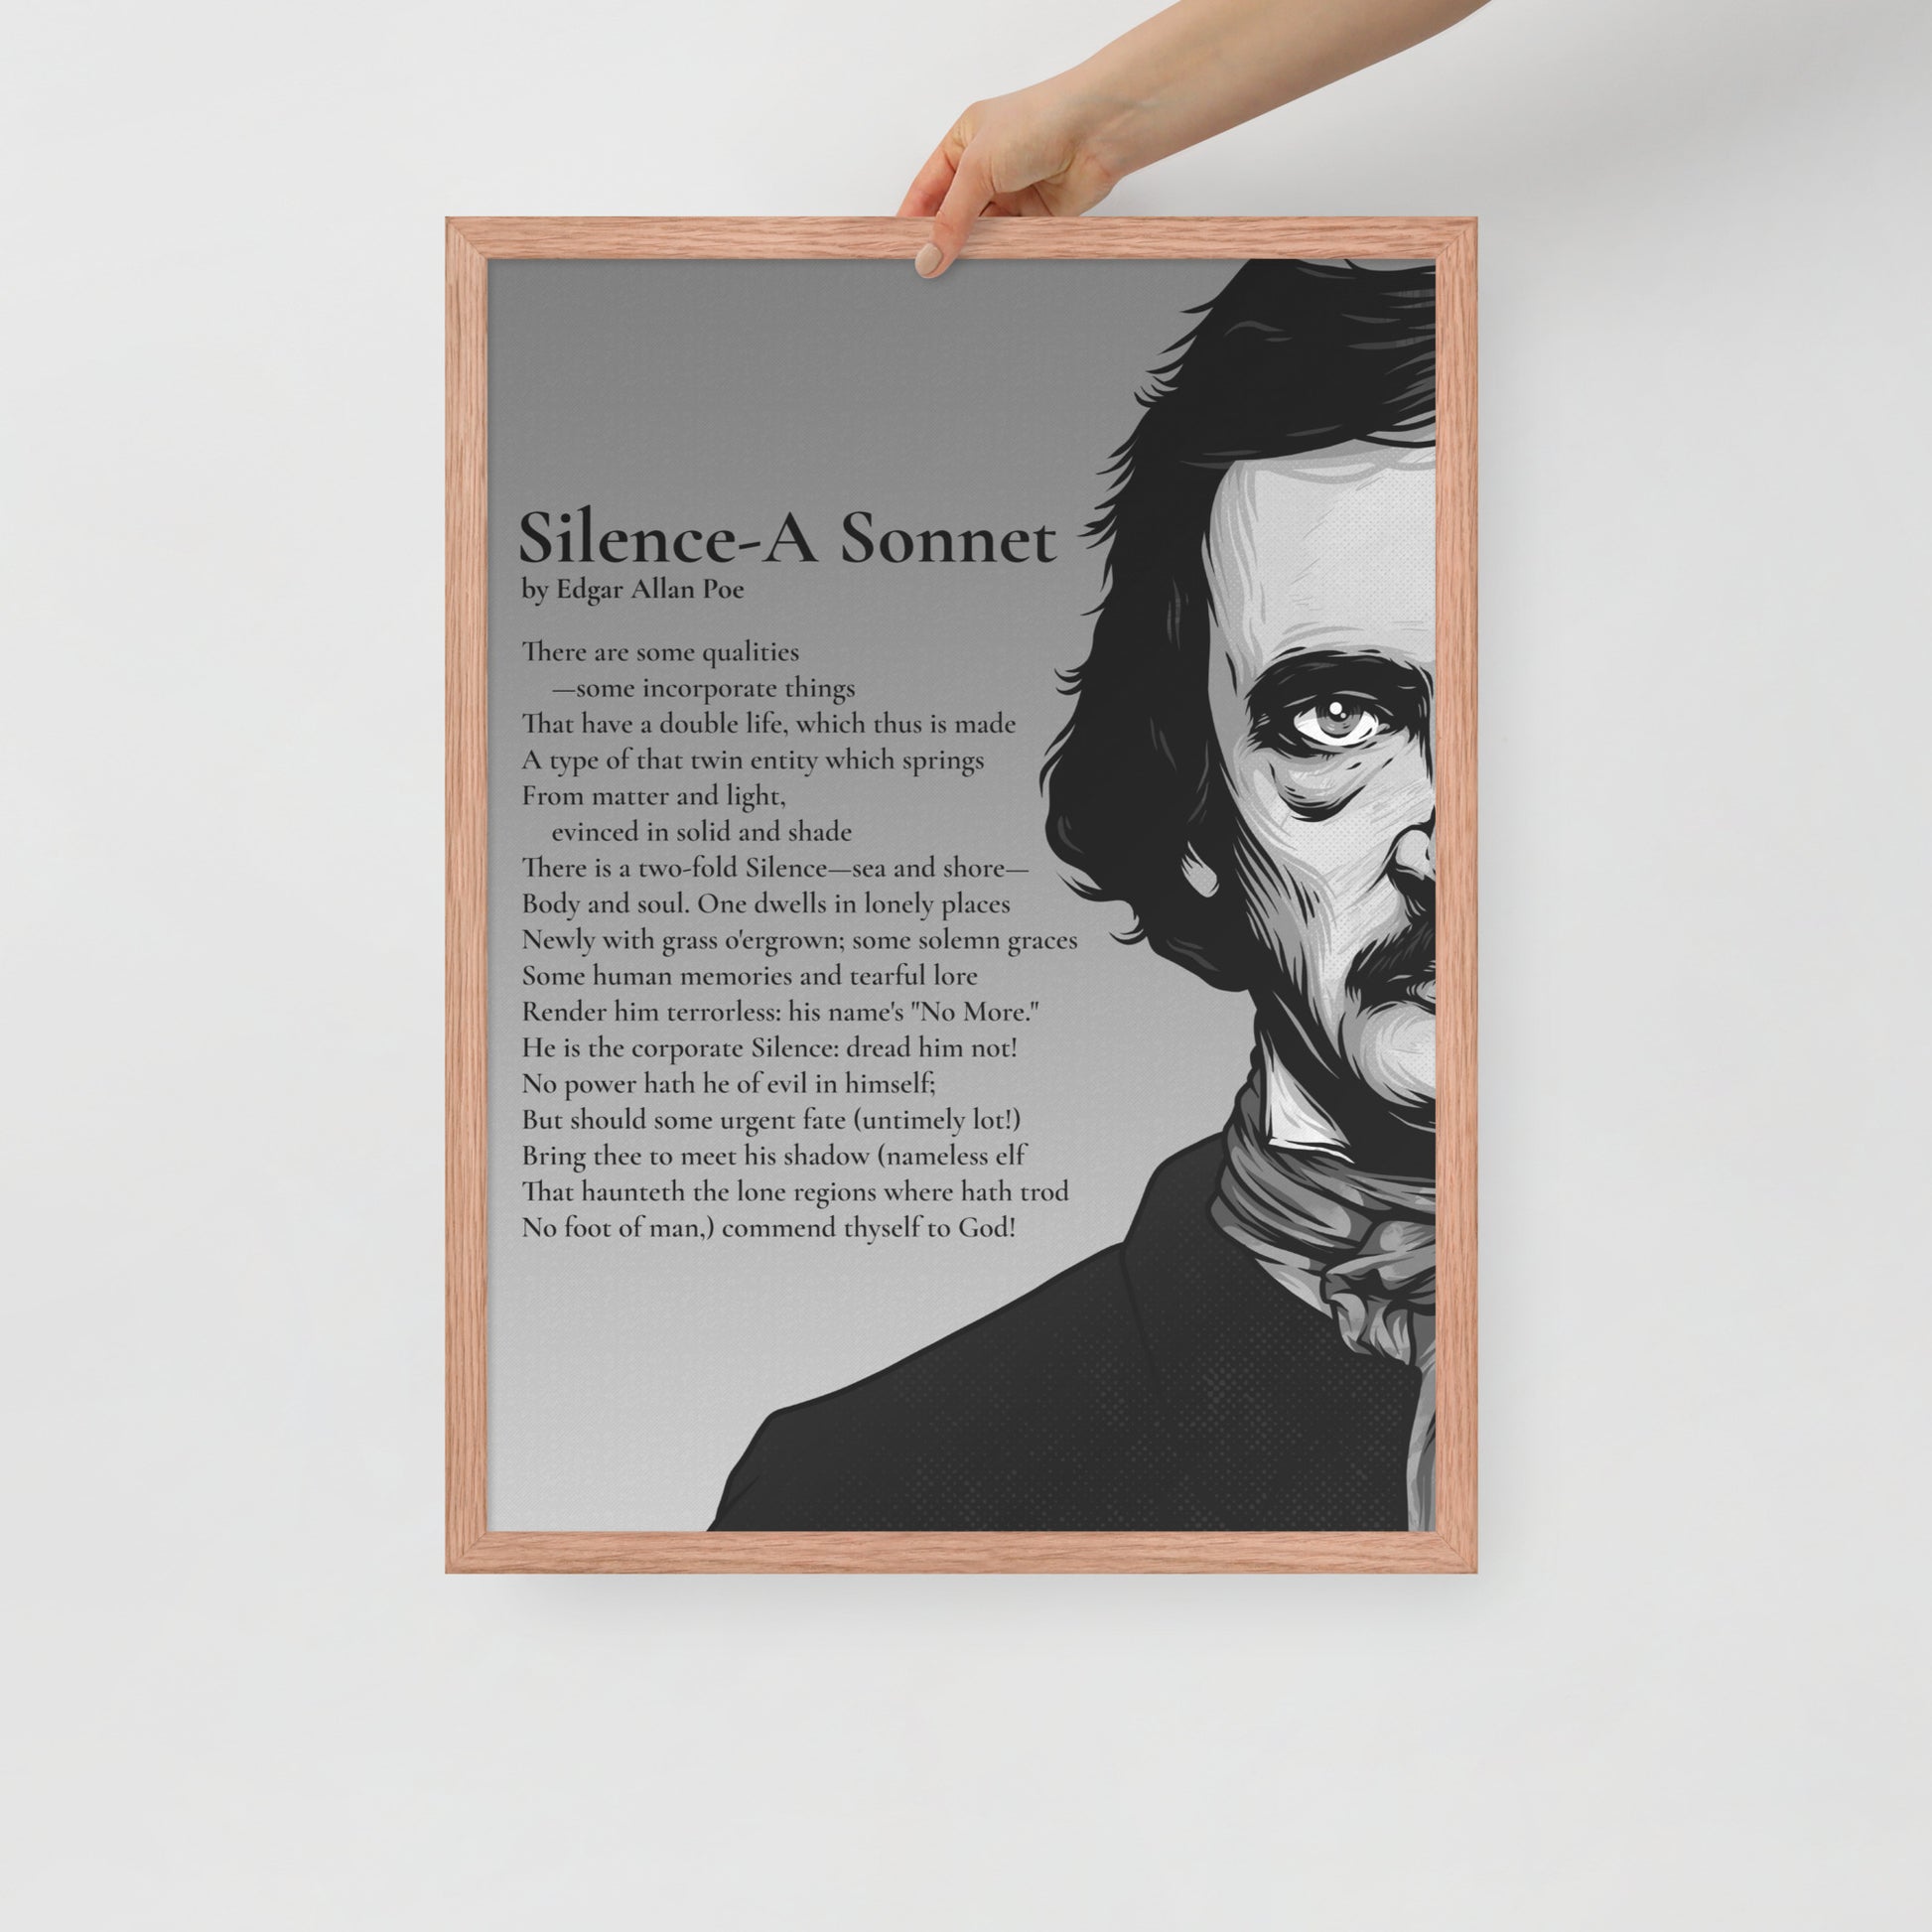 Edgar Allan Poe's 'Silence-A Sonnet' Framed Matted Poster - 18 x 24 Red Oak Frame